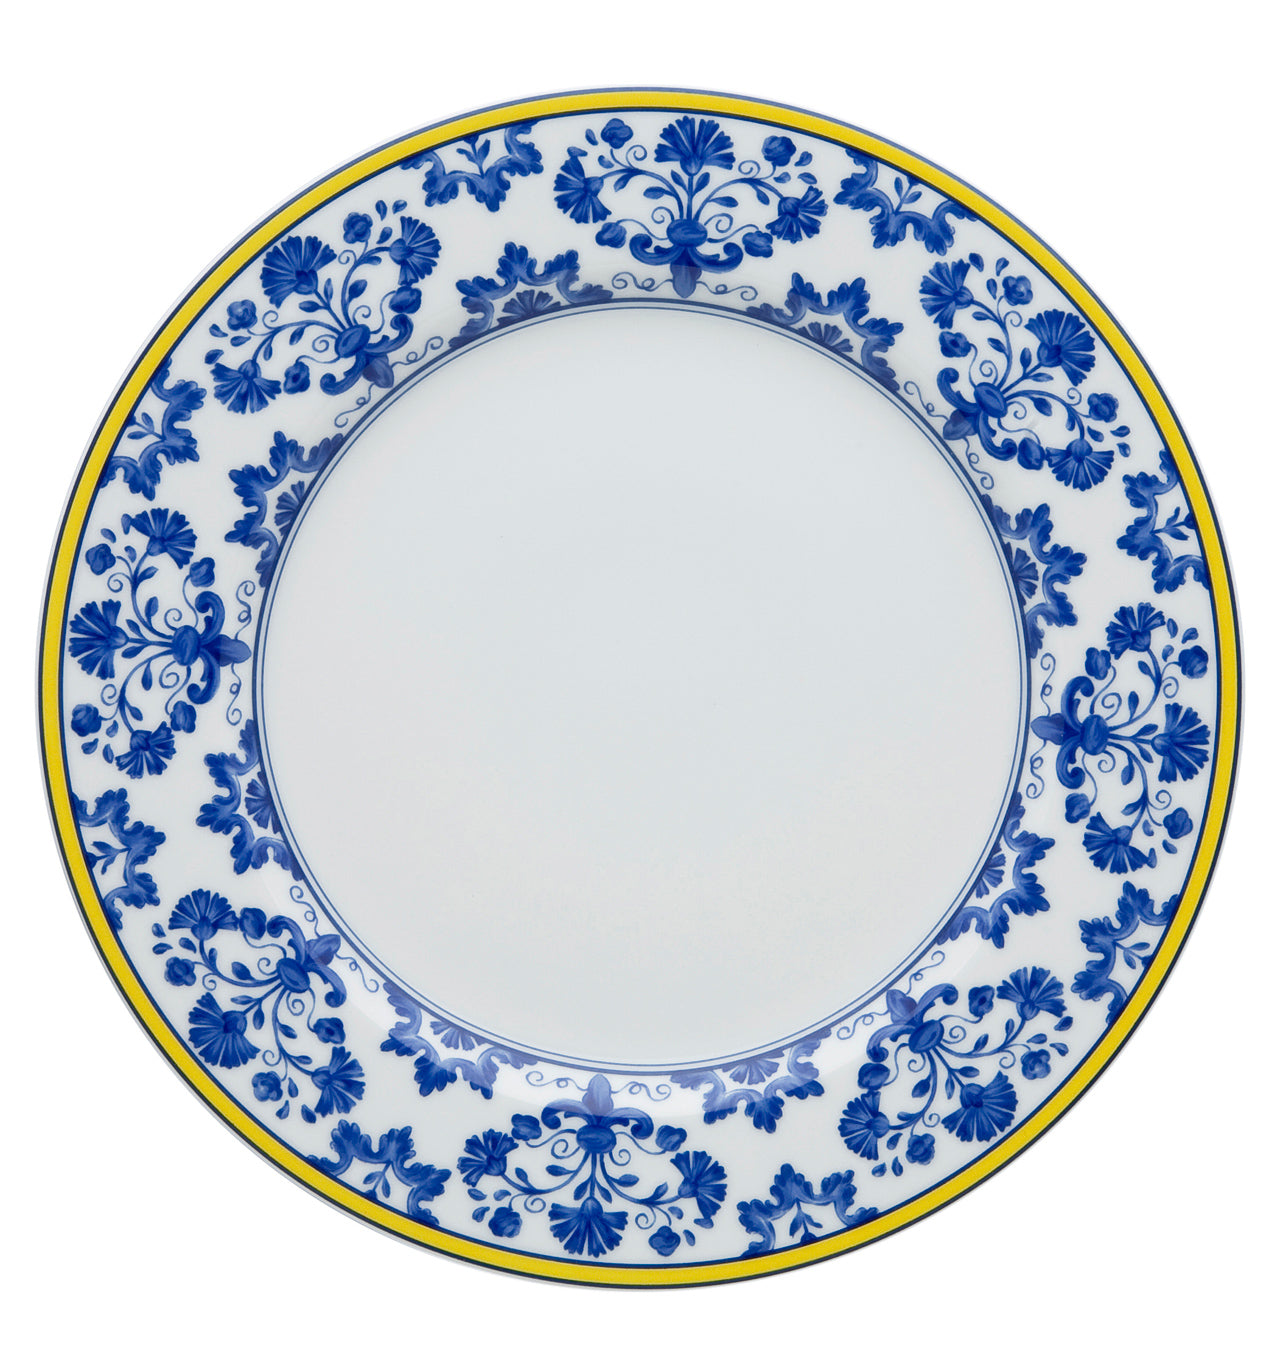 Castelo Branco - Dinner Plate